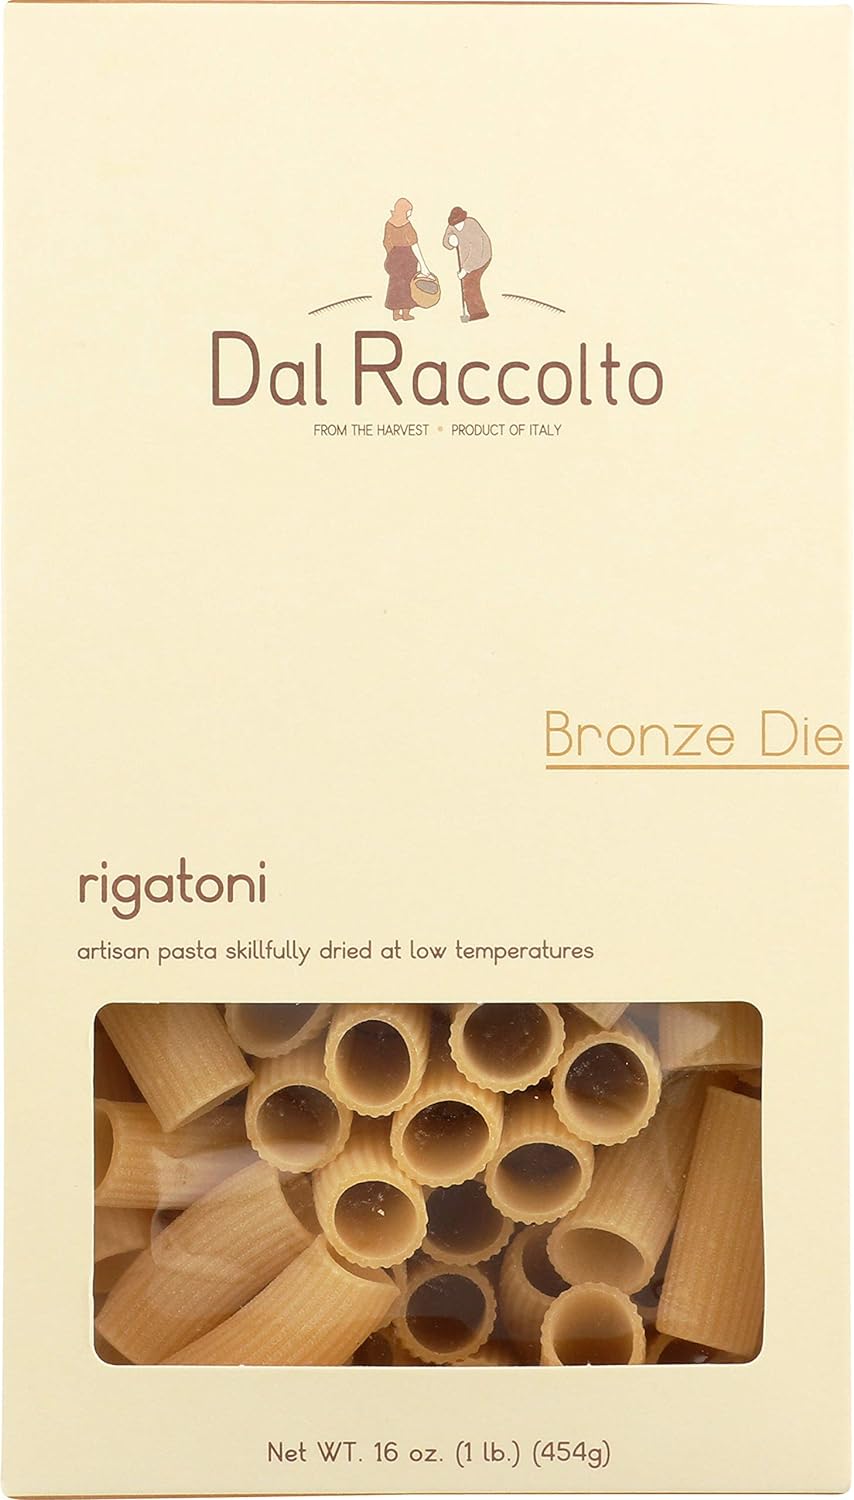 Dal Raccolto Bronze Die Pasta - Rigatoni, 1 lb Box